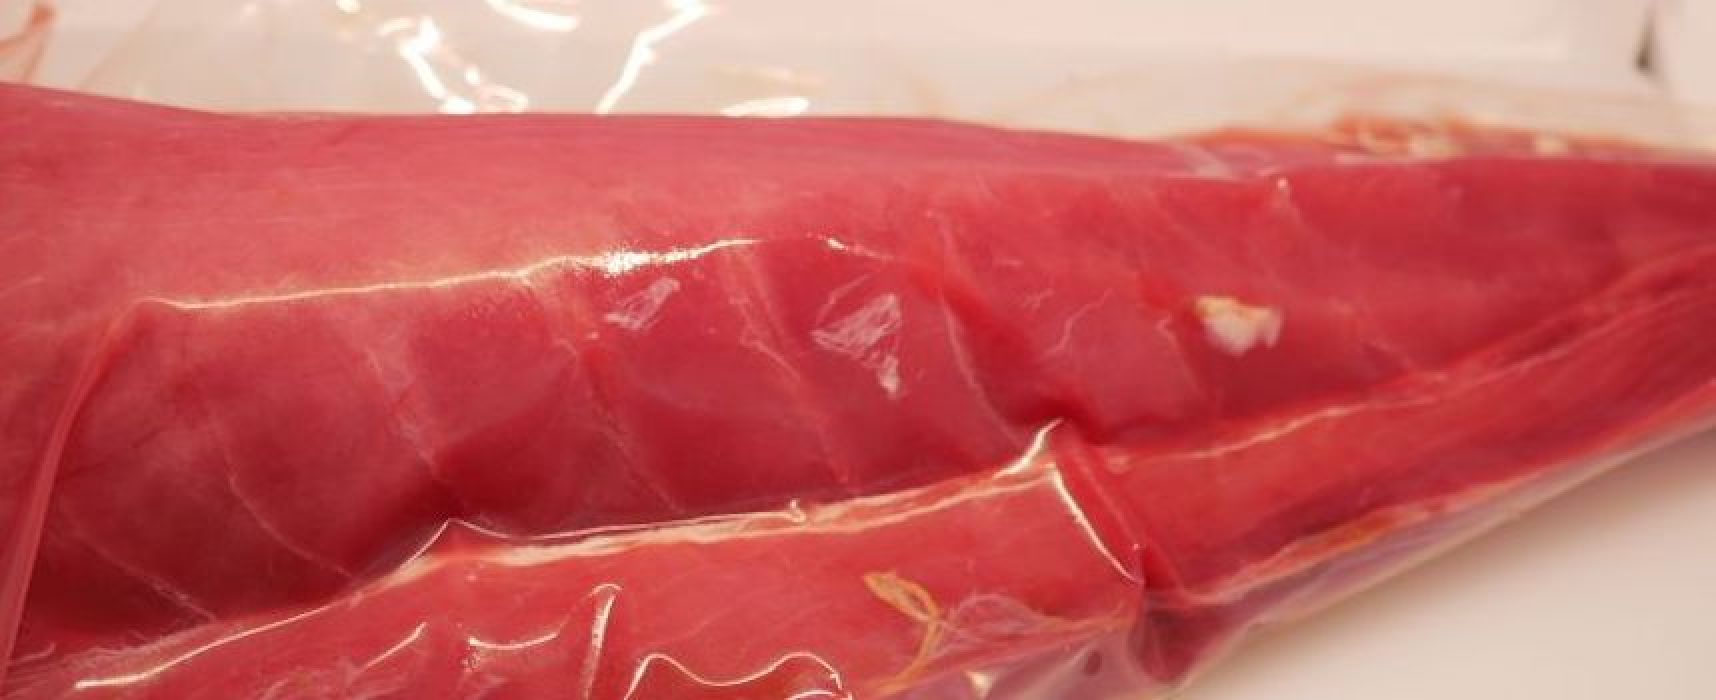 Azienda ittica comunica ripresa produzione tonno decongelato dopo ritiro del Ministero